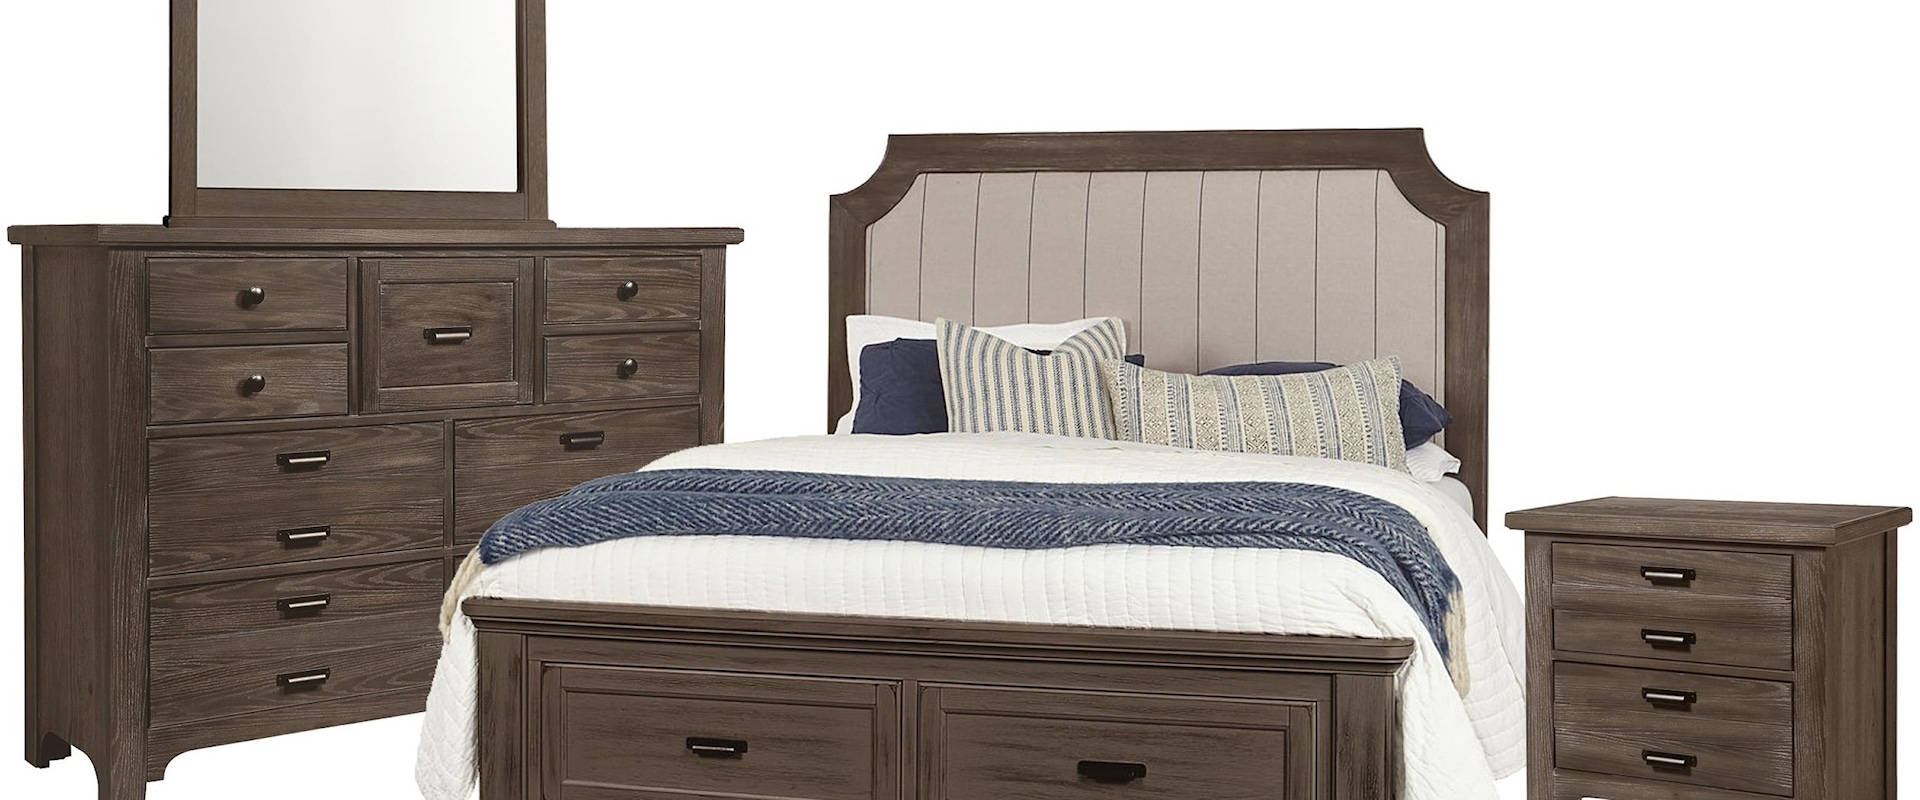 King Upholstered Storage Bed, 9 Drawer Dresser, Master Landscape Mirror, 2 Drawer Nightstand